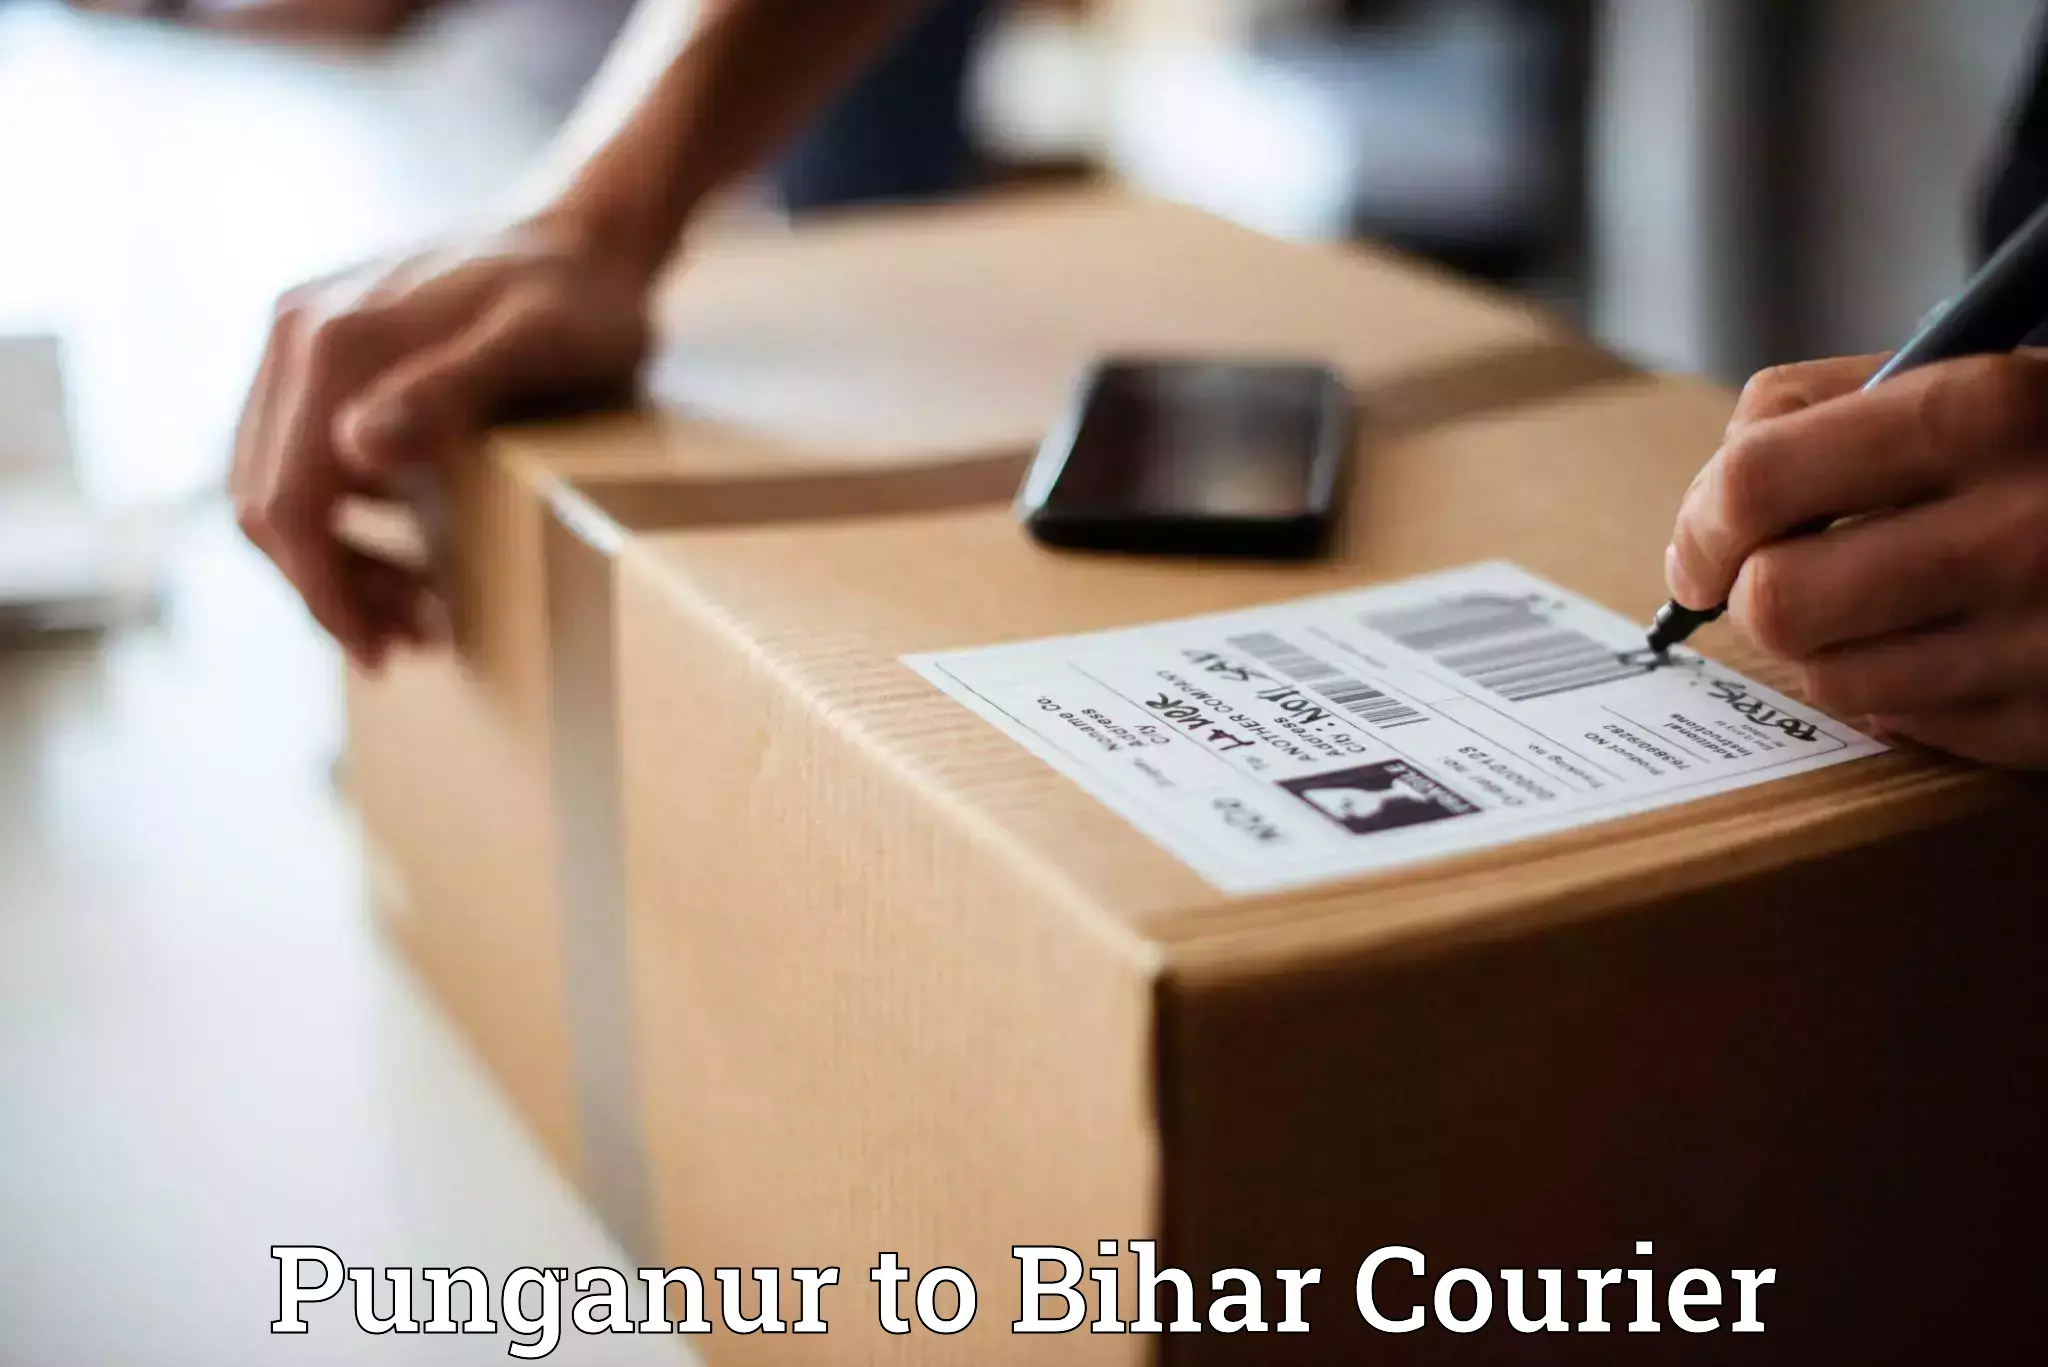 Digital courier platforms Punganur to Baniapur